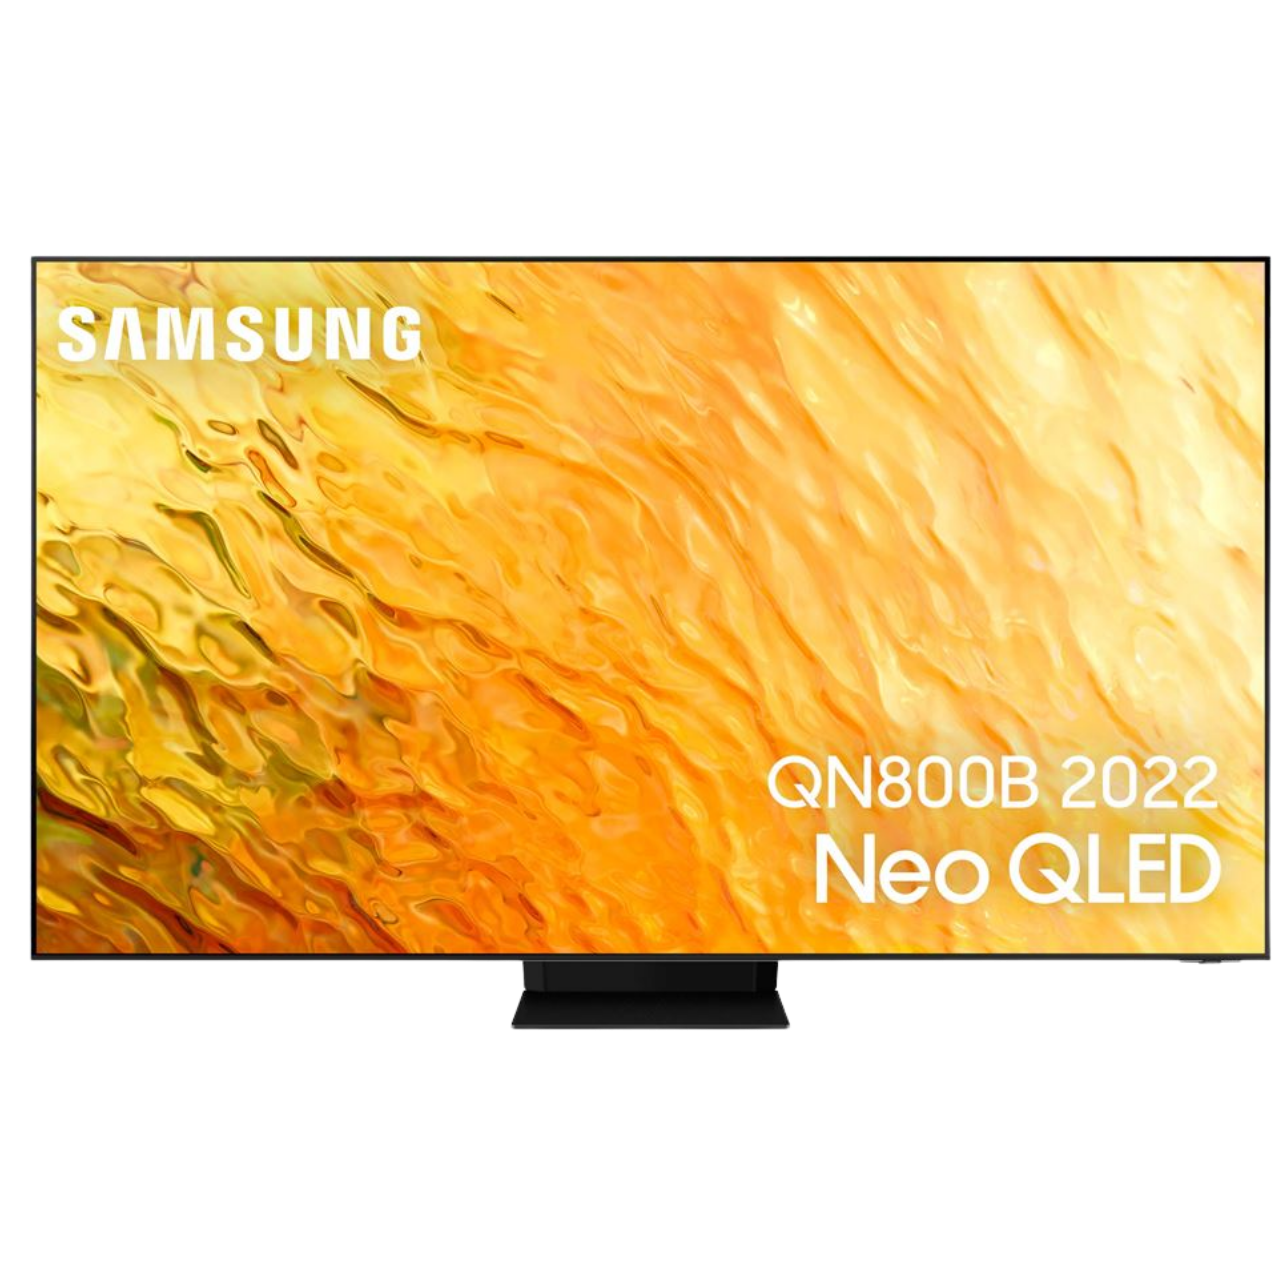 TV 4K : La qualité Samsung est à petit prix ! 